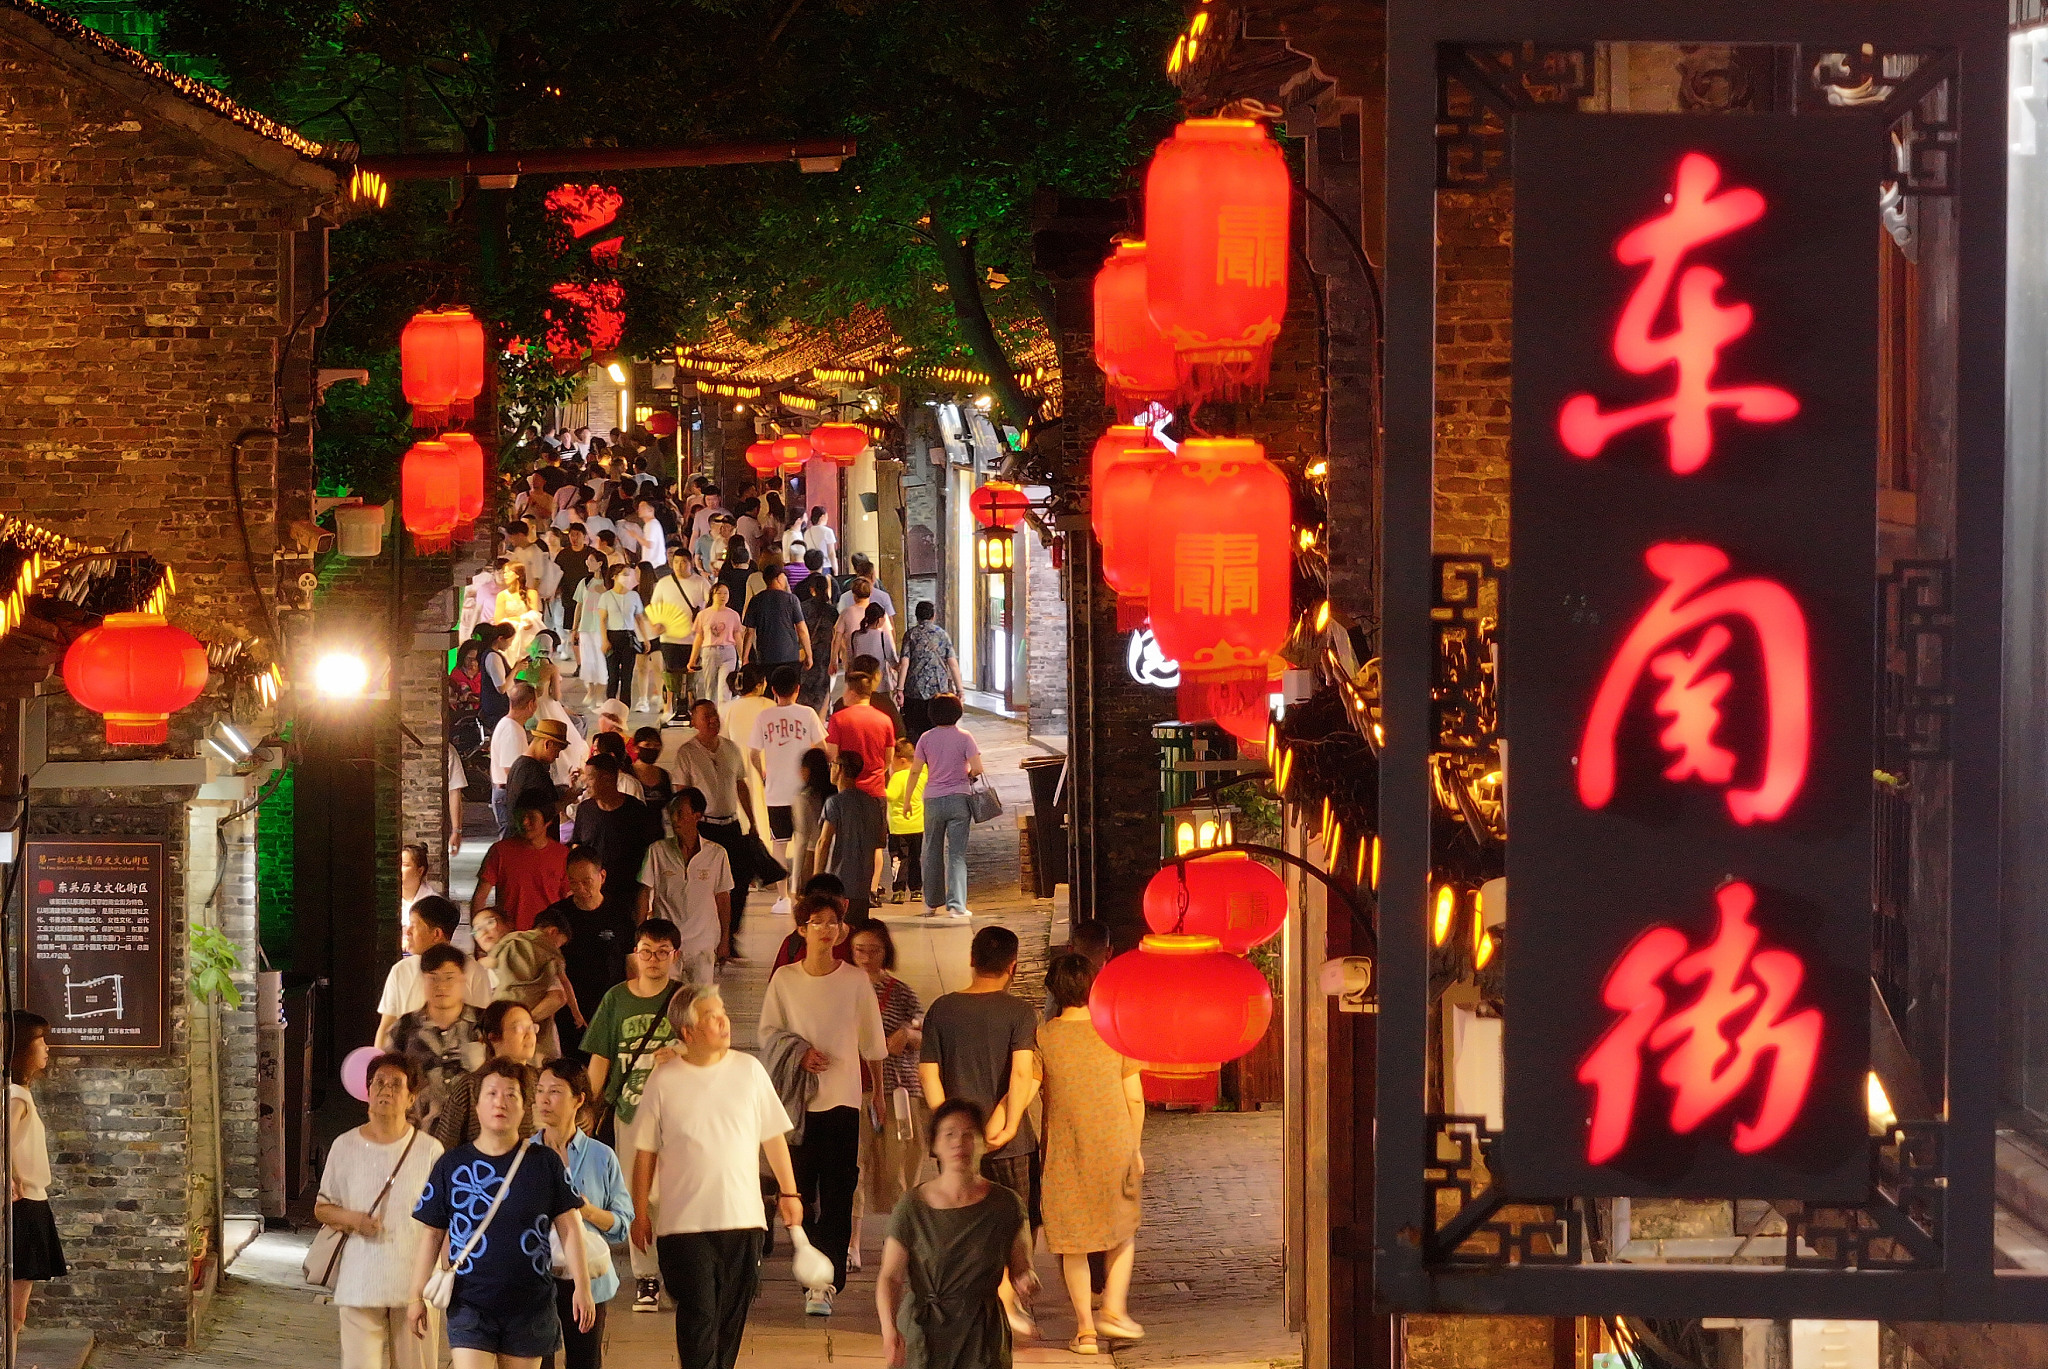 江苏扬州
：“夜经济”点亮古街夏日夜生活（图片来源
：视觉中国）